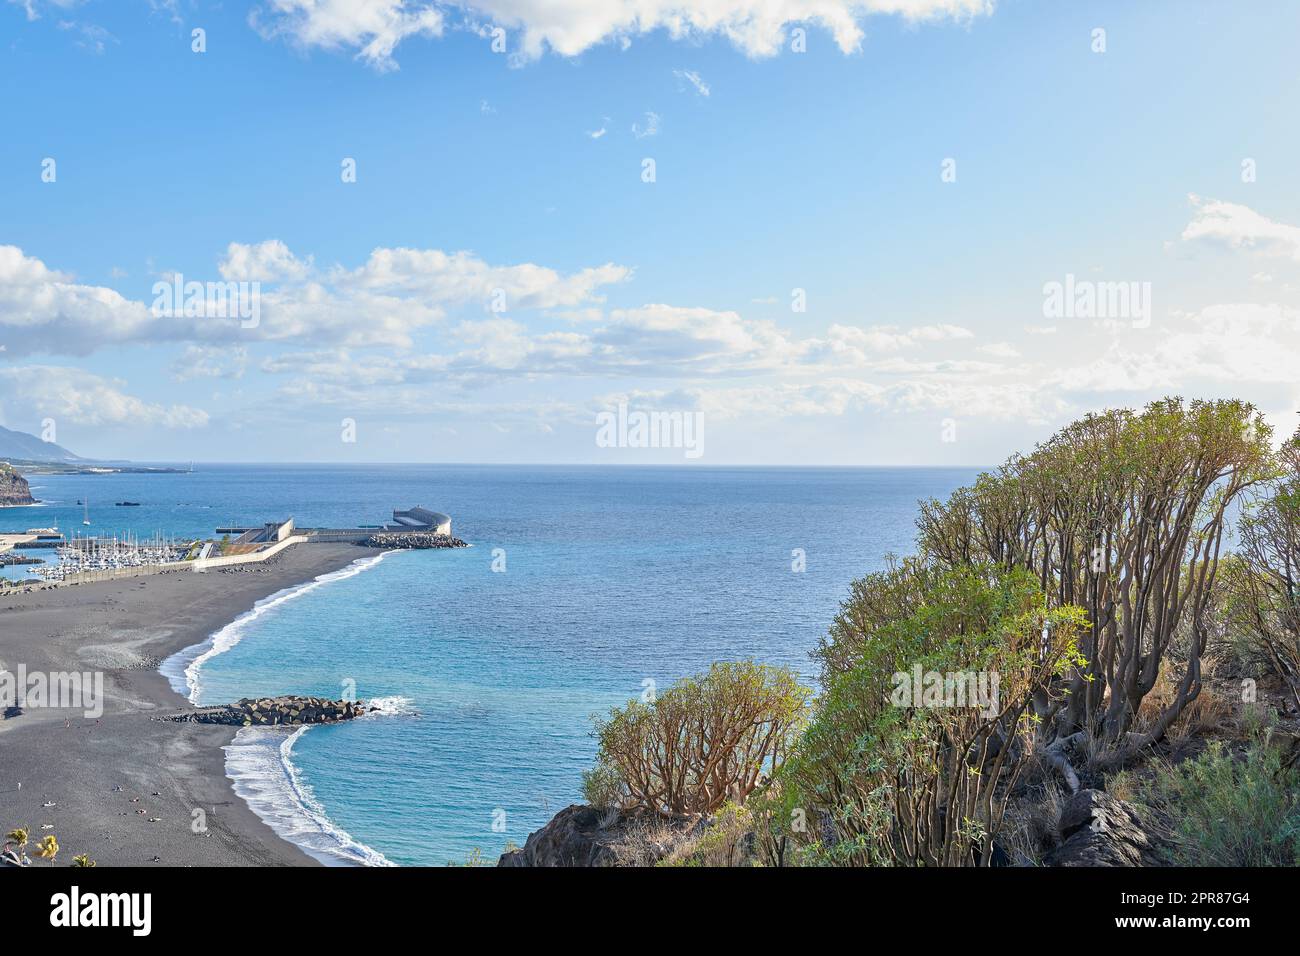 Litorale panoramico e paesaggio marino della città costiera turistica di Puerto de Tazacorte a la Palma, in Spagna durante l'estate. Vista panoramica di un mare con una spiaggia di sabbia nera, un cielo blu con nuvole e spazio per copiare. Foto Stock